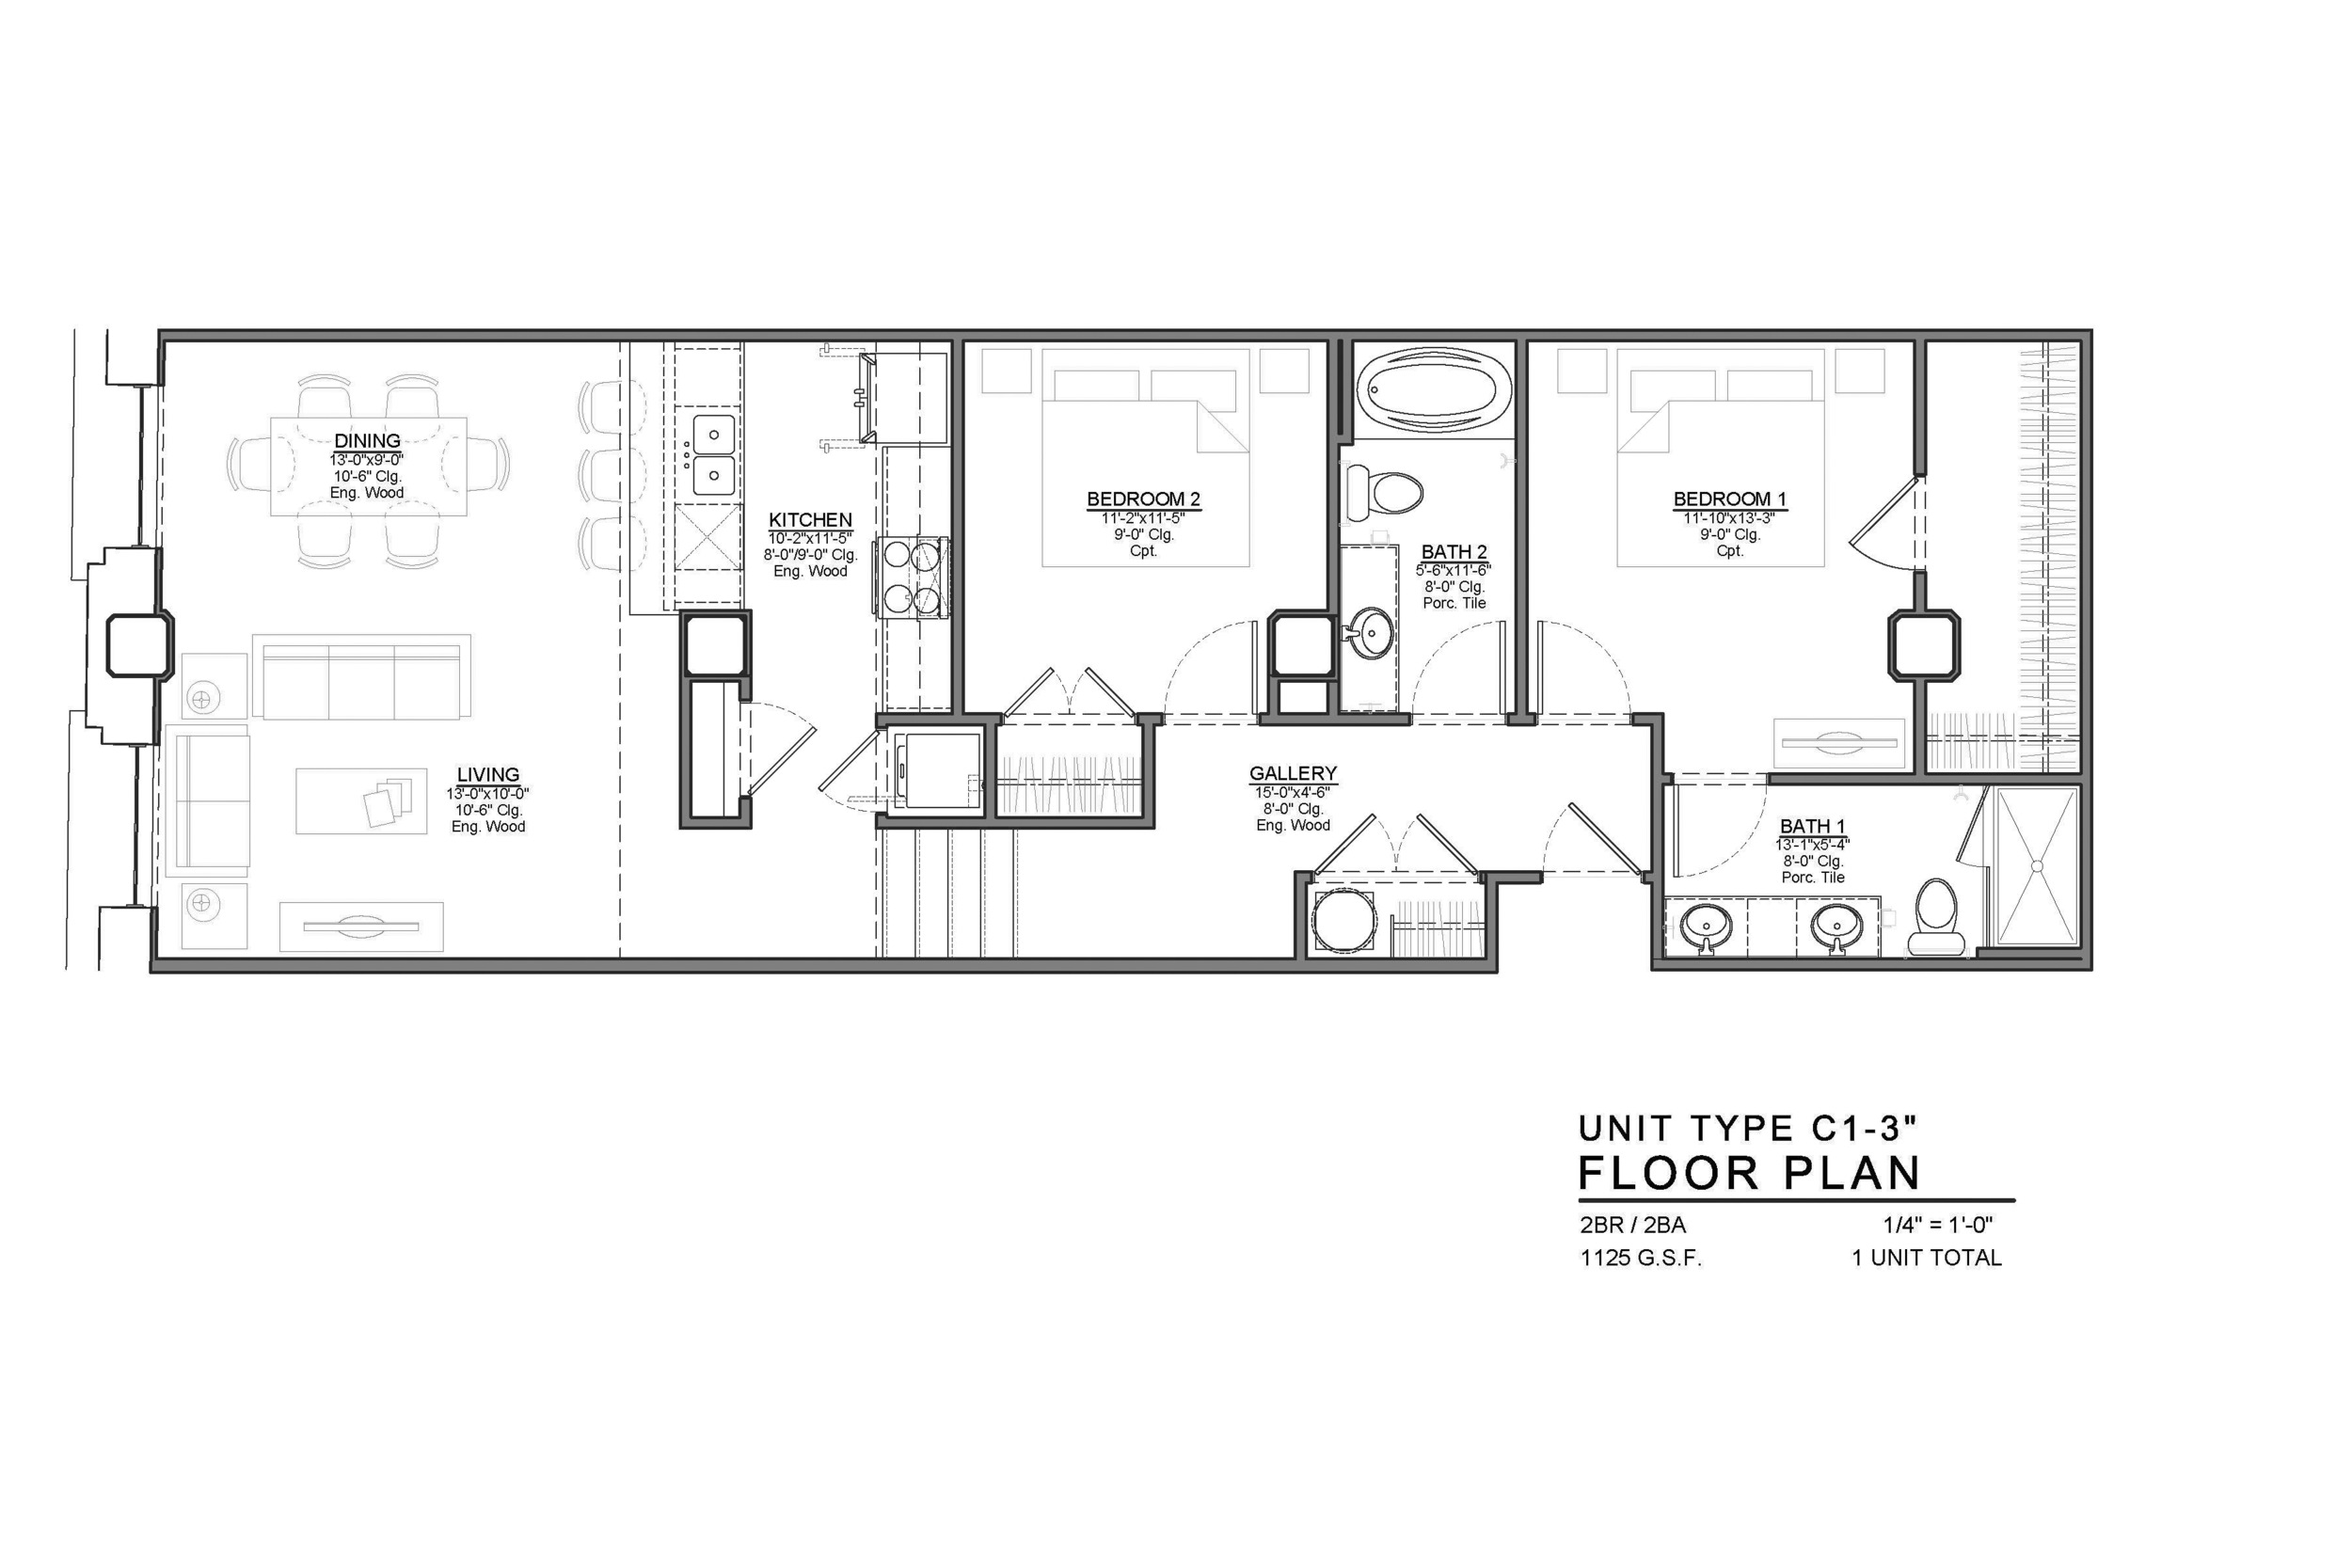 C1-3 FLOOR PLAN: 2 BEDROOM / 2 BATH